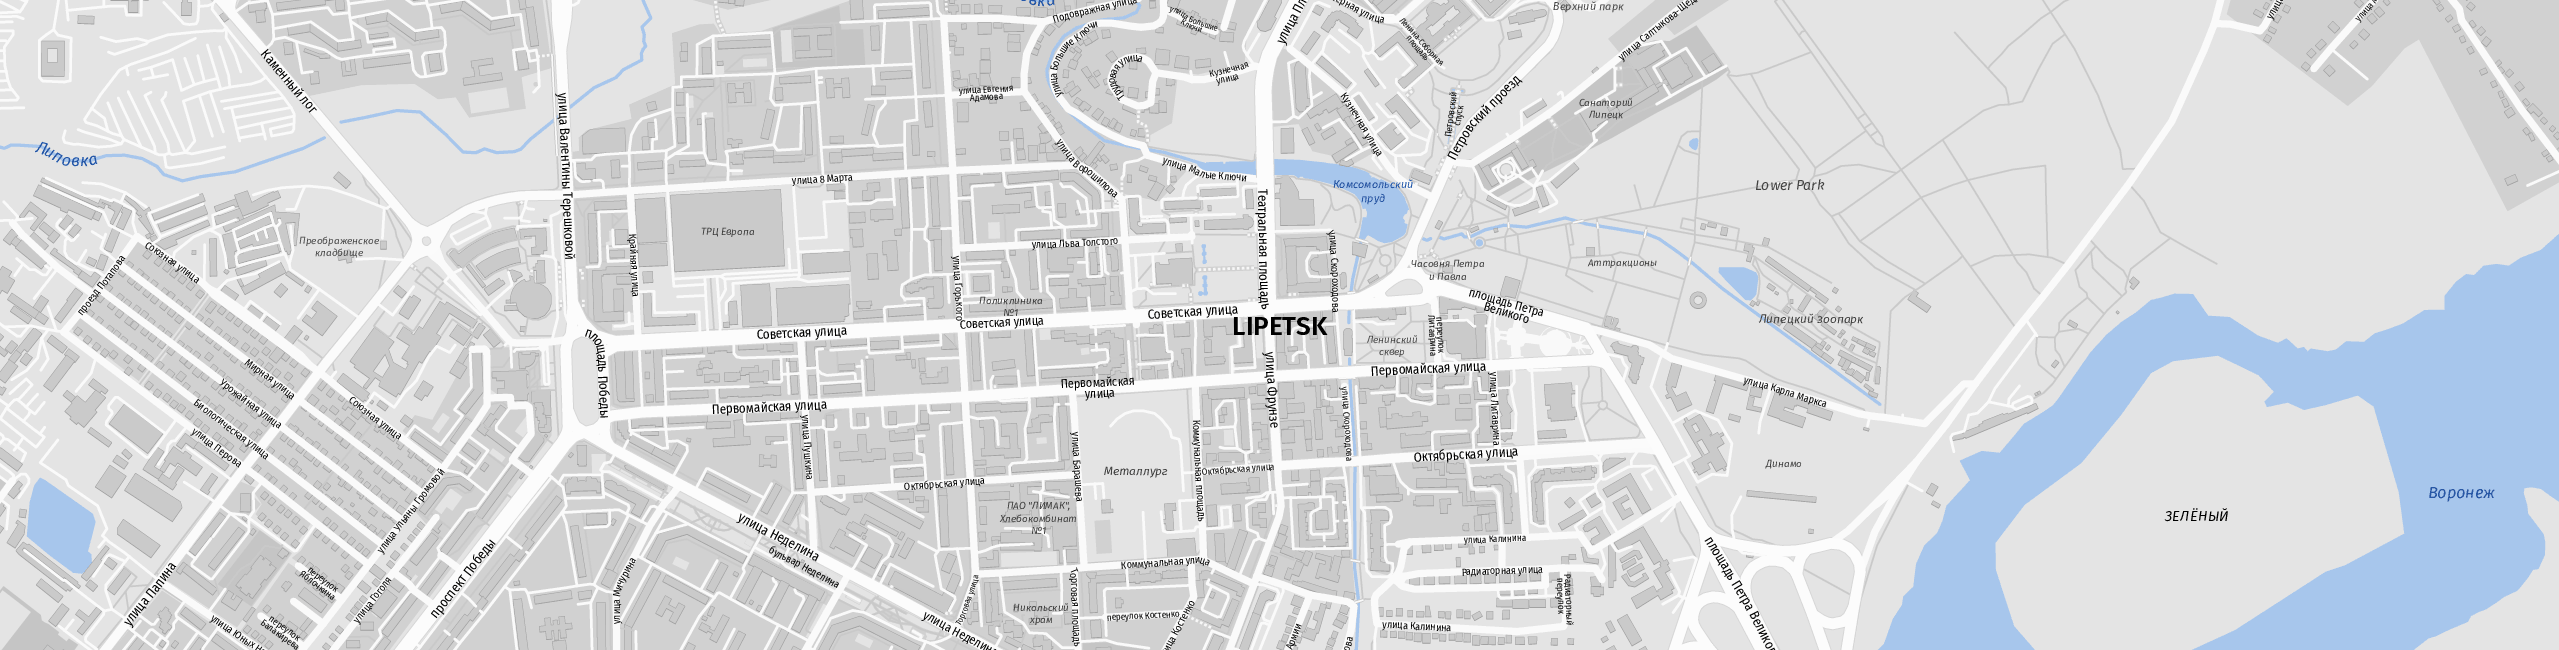 Stadtplan Lipetsk zum Downloaden.